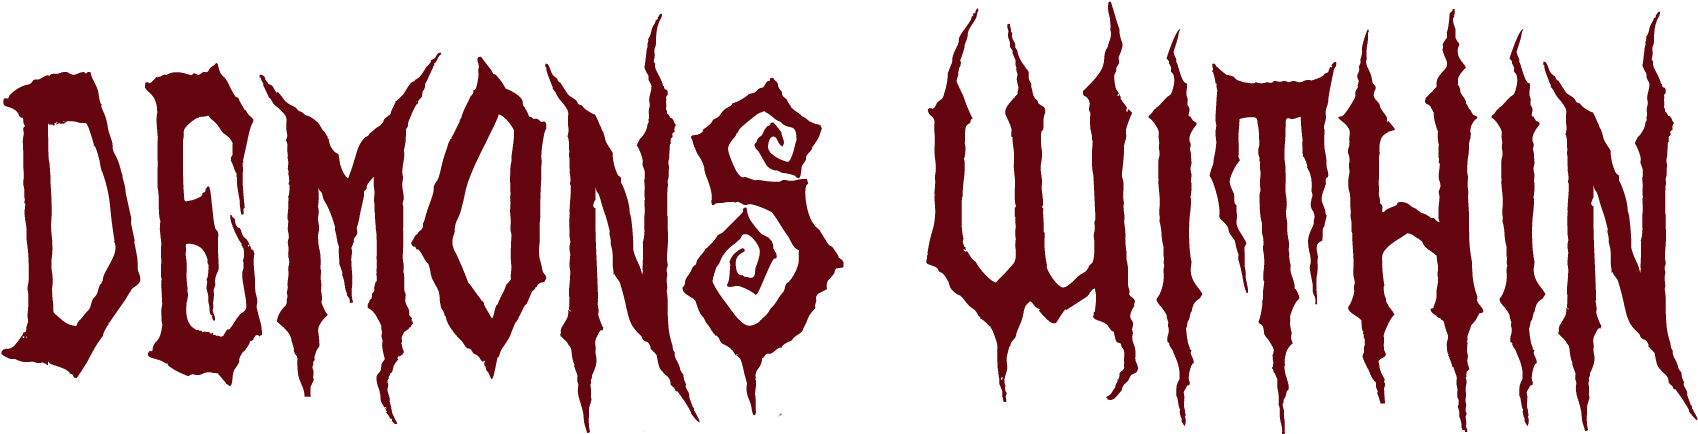 Demons-logo - Twisted Envy I Survived Scare Fest Novelty Mug (1829x553), Png Download